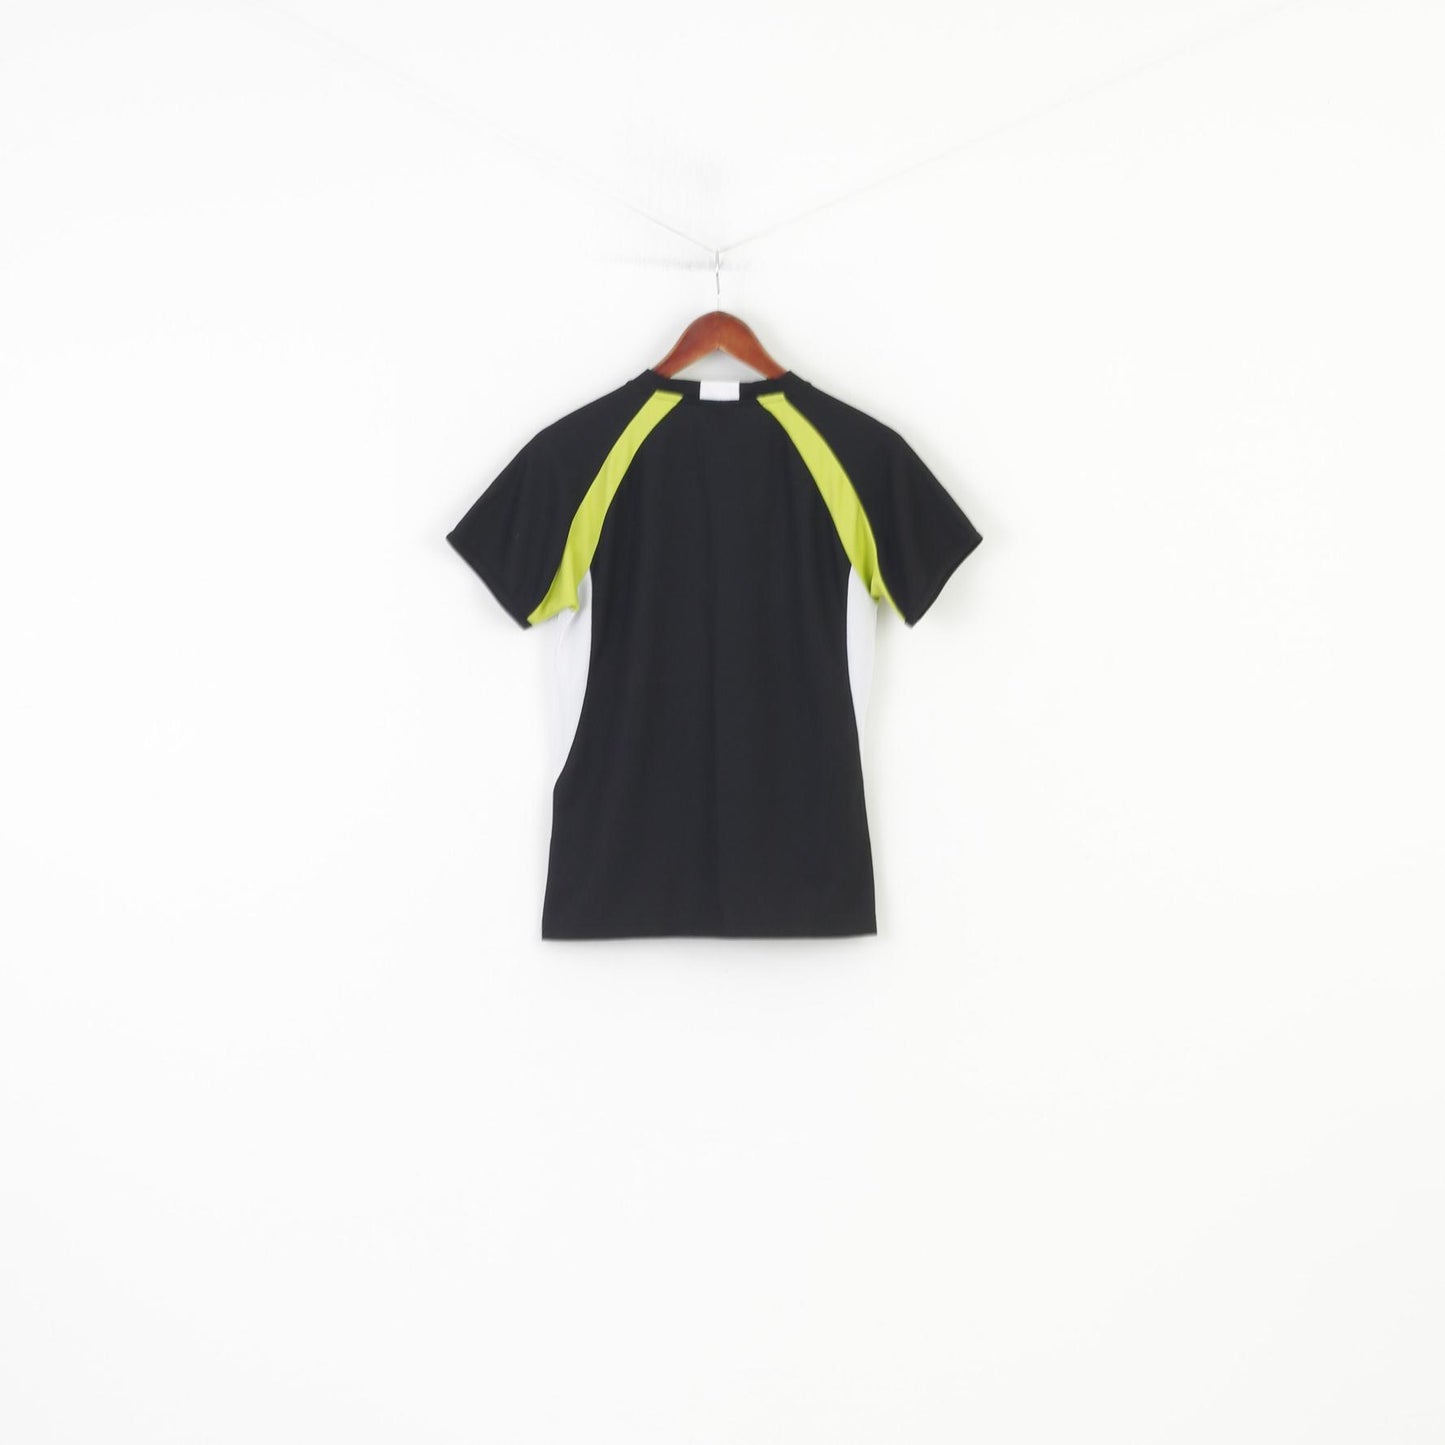 3 étoiles Femme 36 T-Shirt SKY Noir Maille Sport Col Rond Stretch Vintage Top